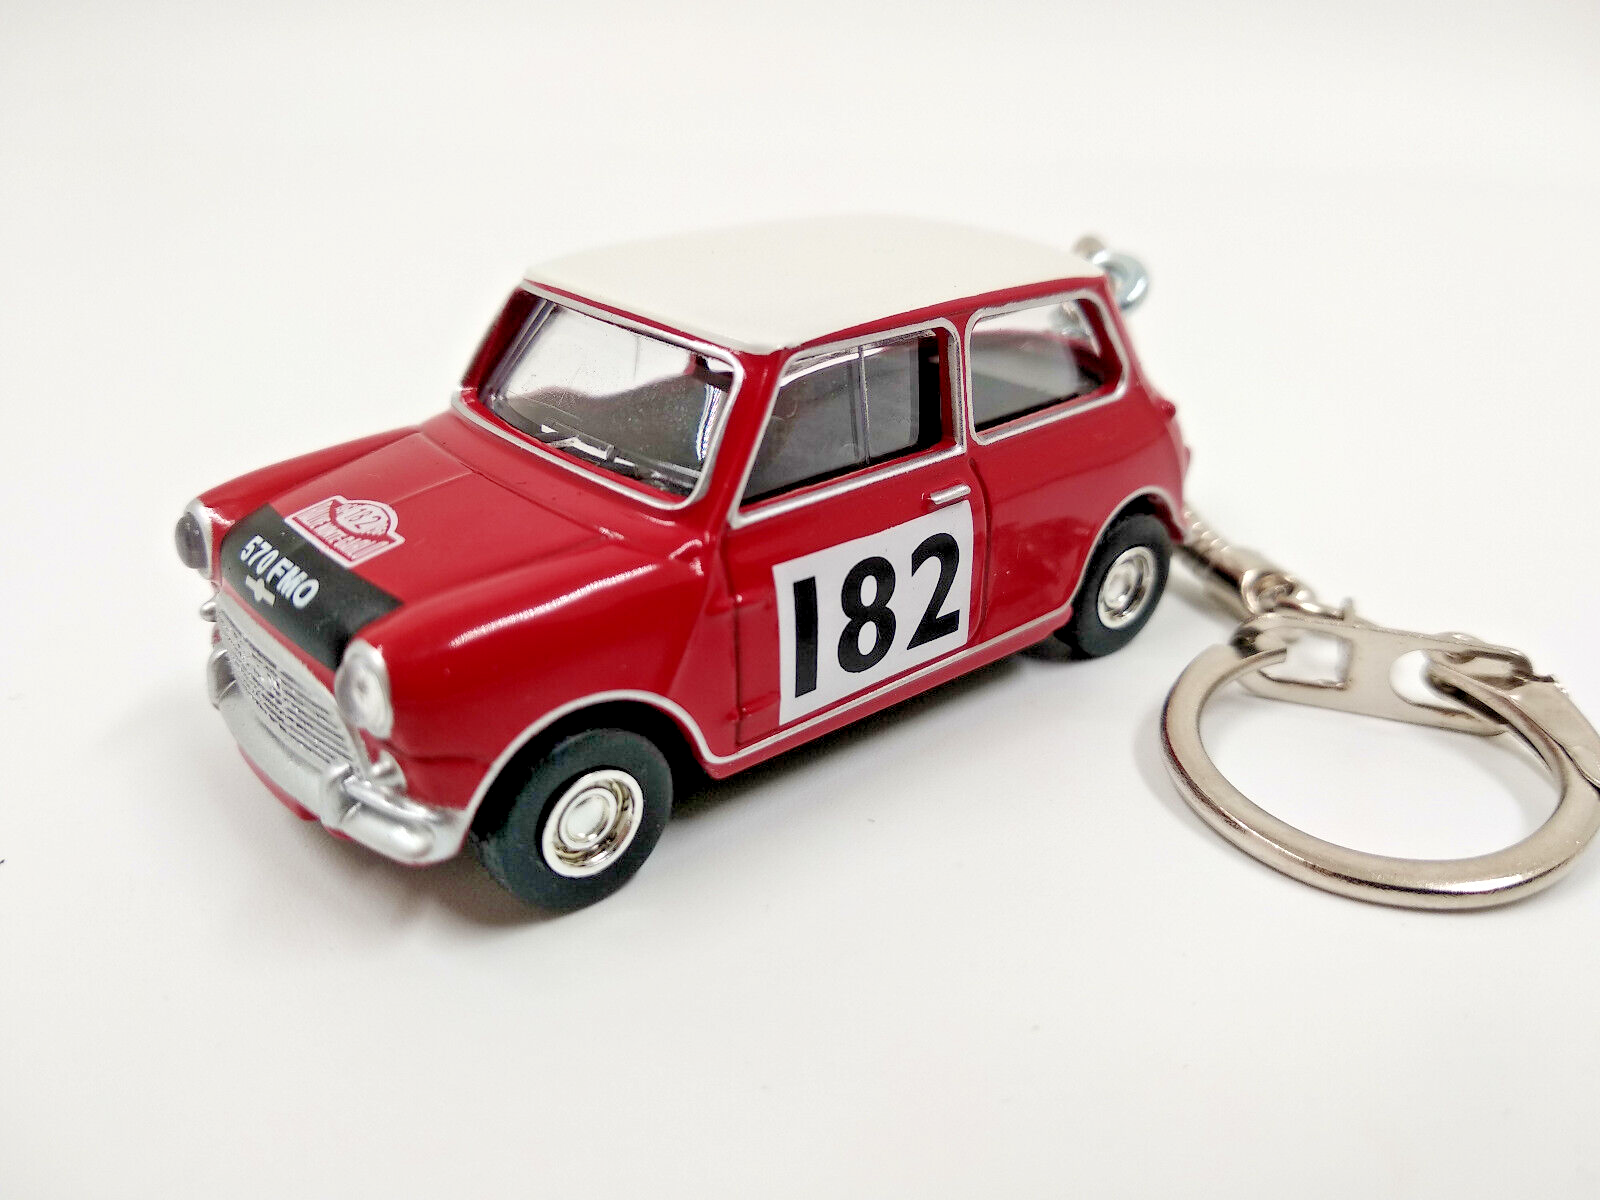 Porte clé Mini Cooper S rallye rouge, en métal, idée cadeau • Ateepique